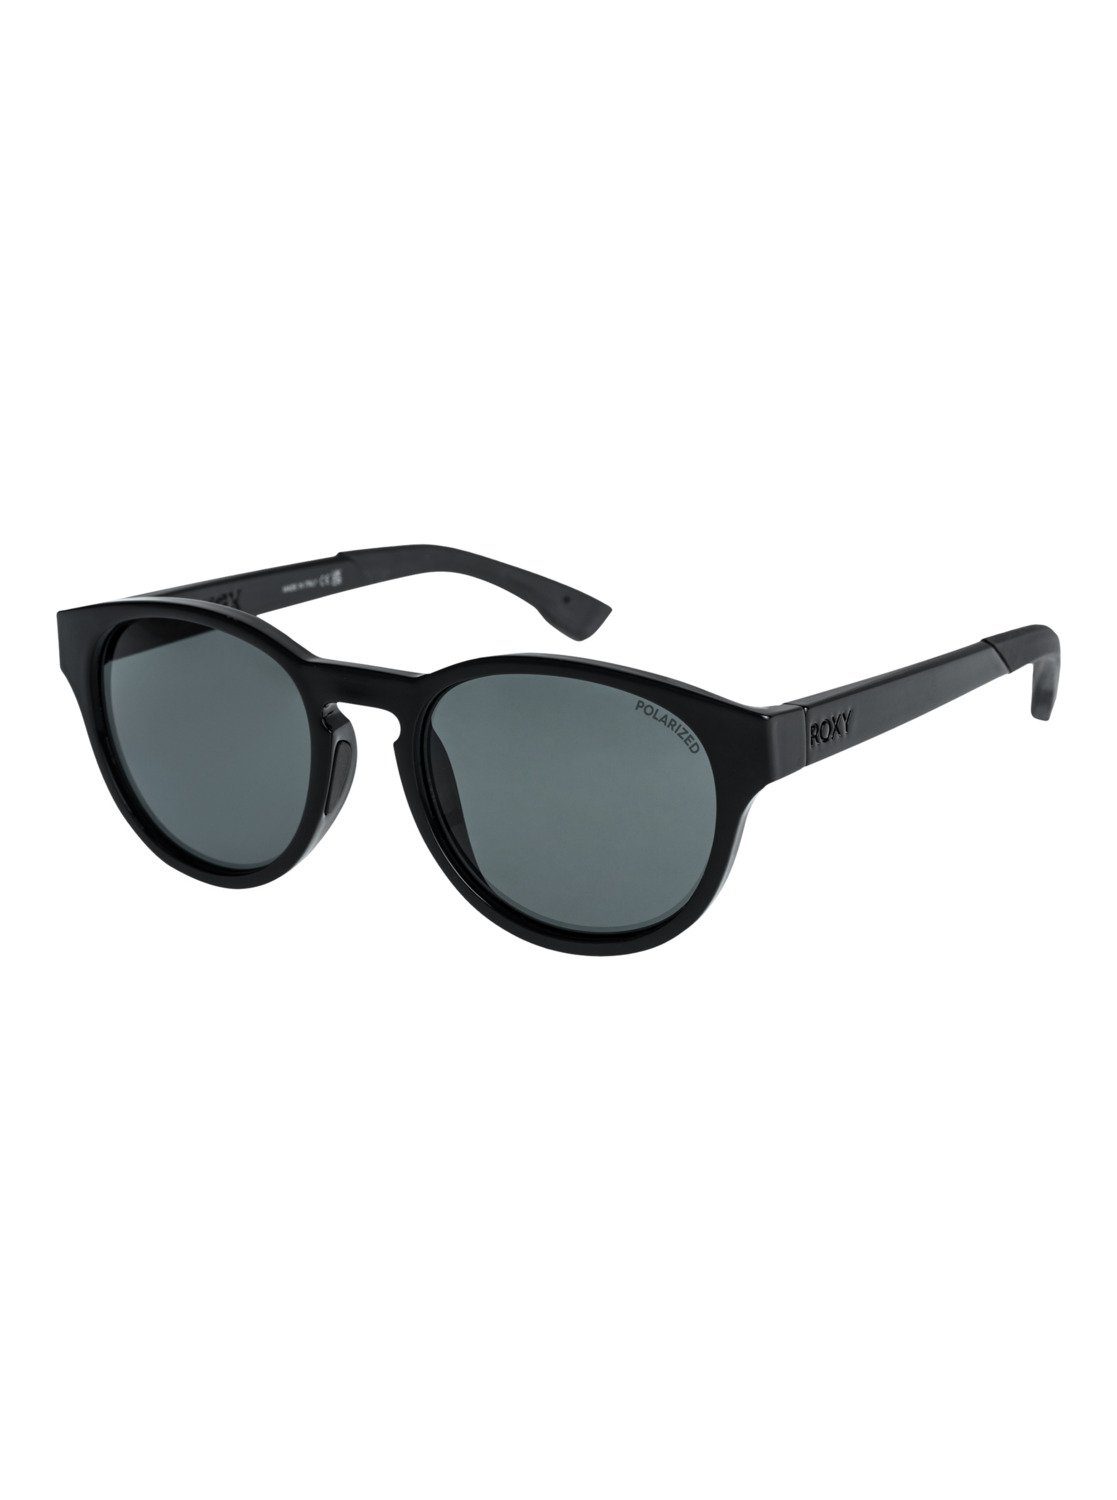 Vertex Plz Roxy P Sonnenbrille Black/Grey